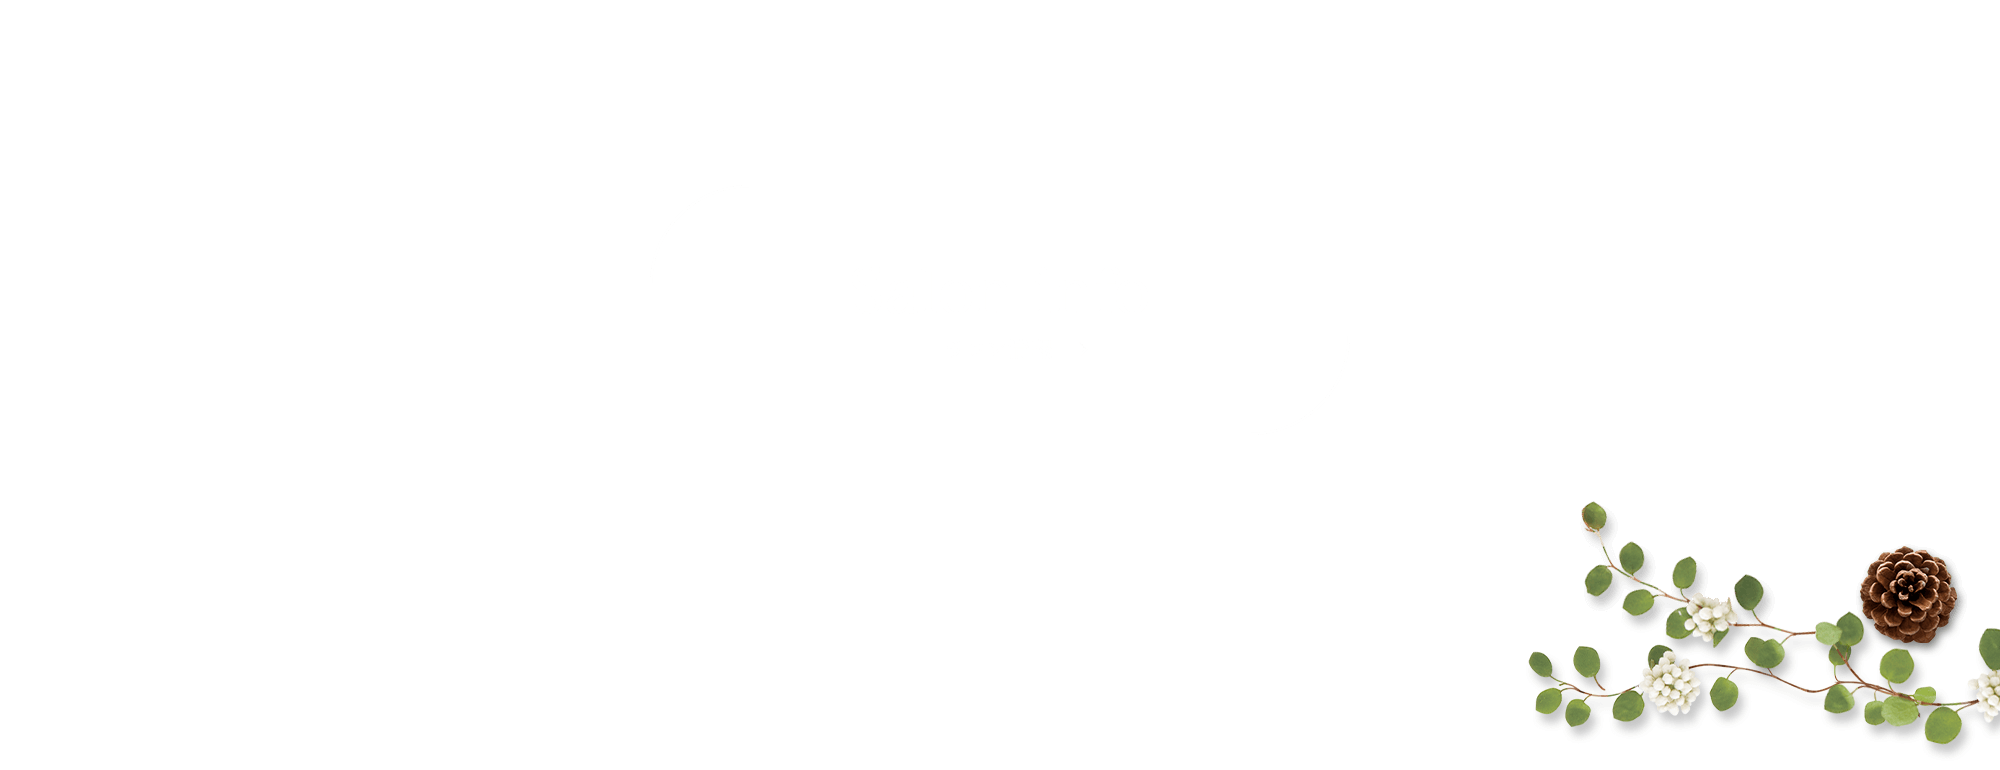 banner_salon